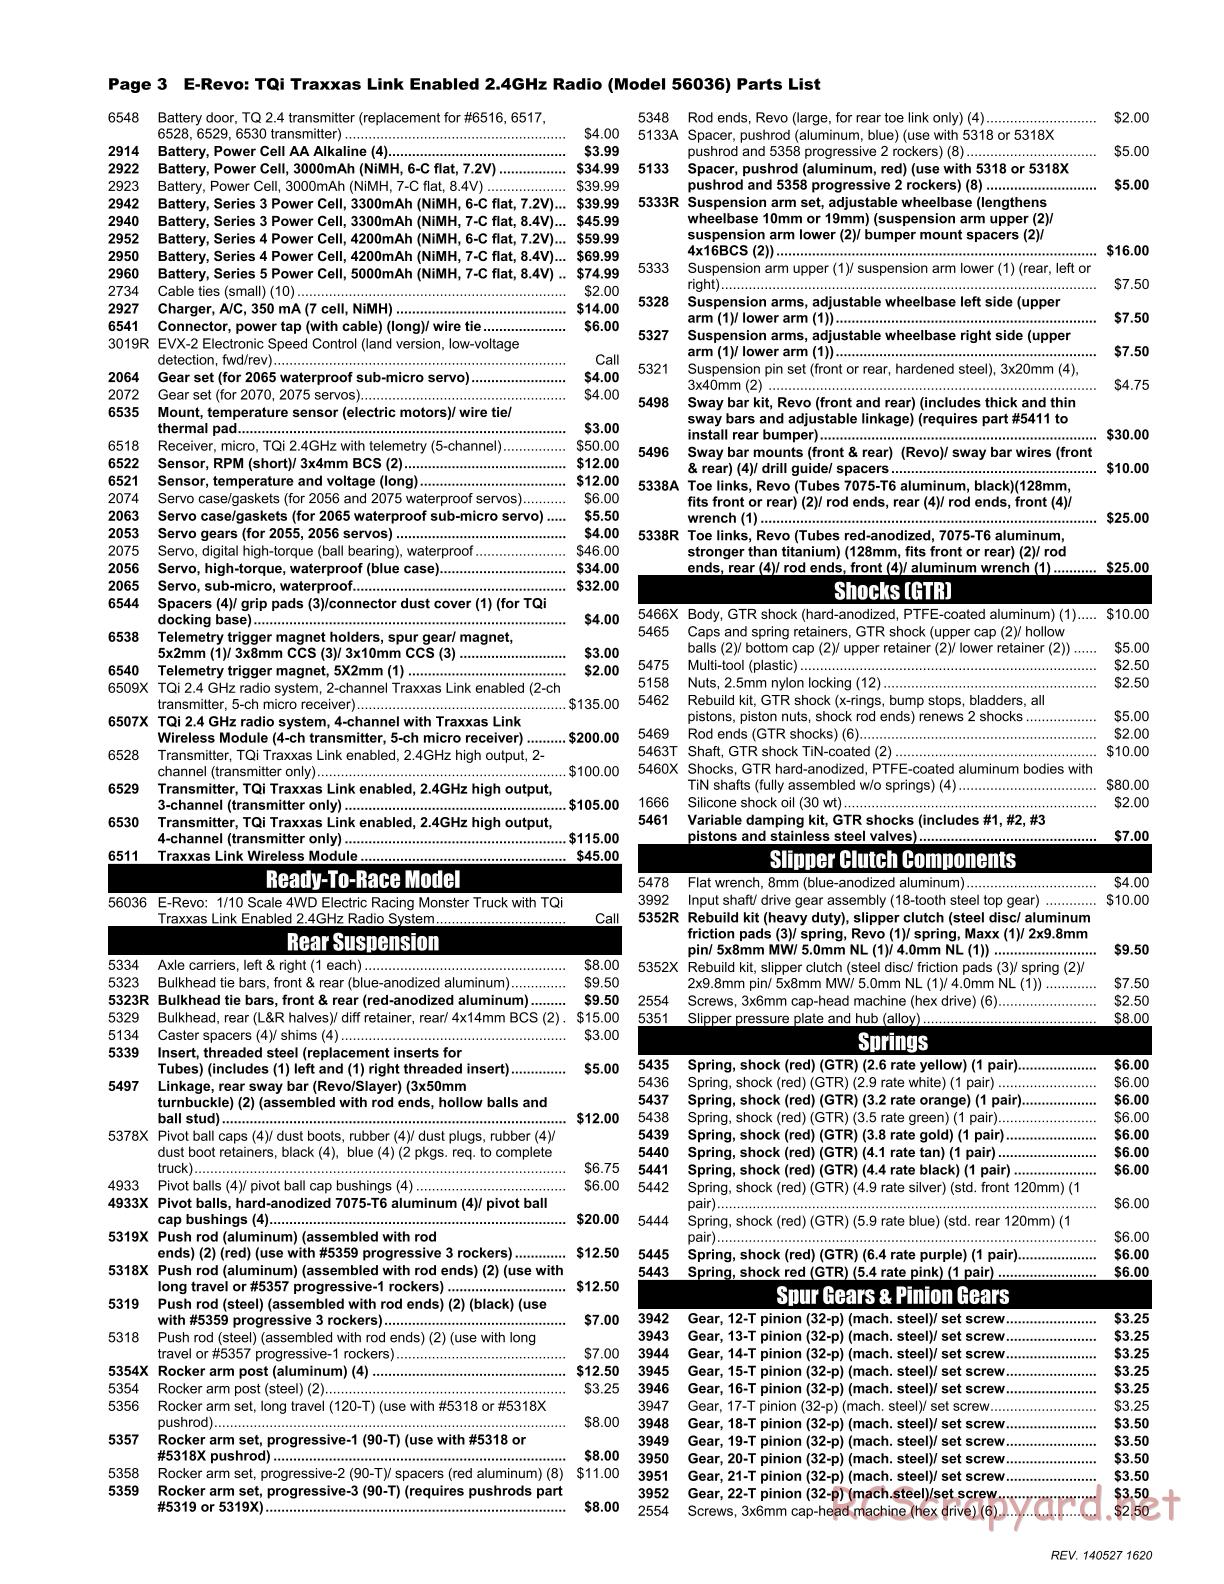 Traxxas - E-Revo (2014) - Parts List - Page 3